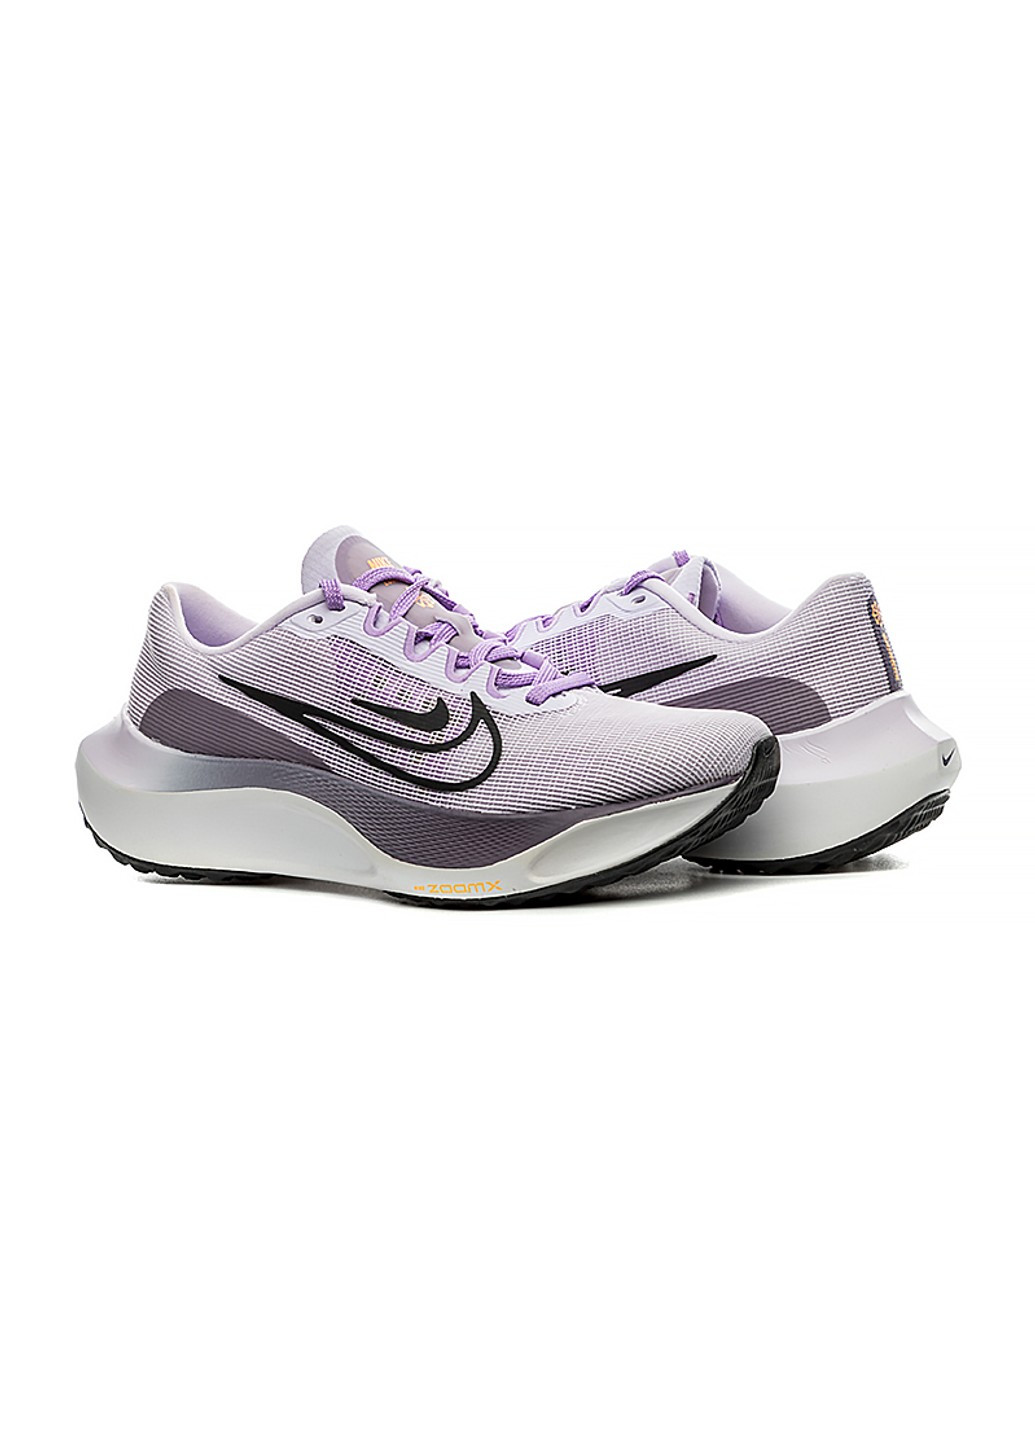 Фіолетові осінні кросівки wmns zoom fly 5 Nike